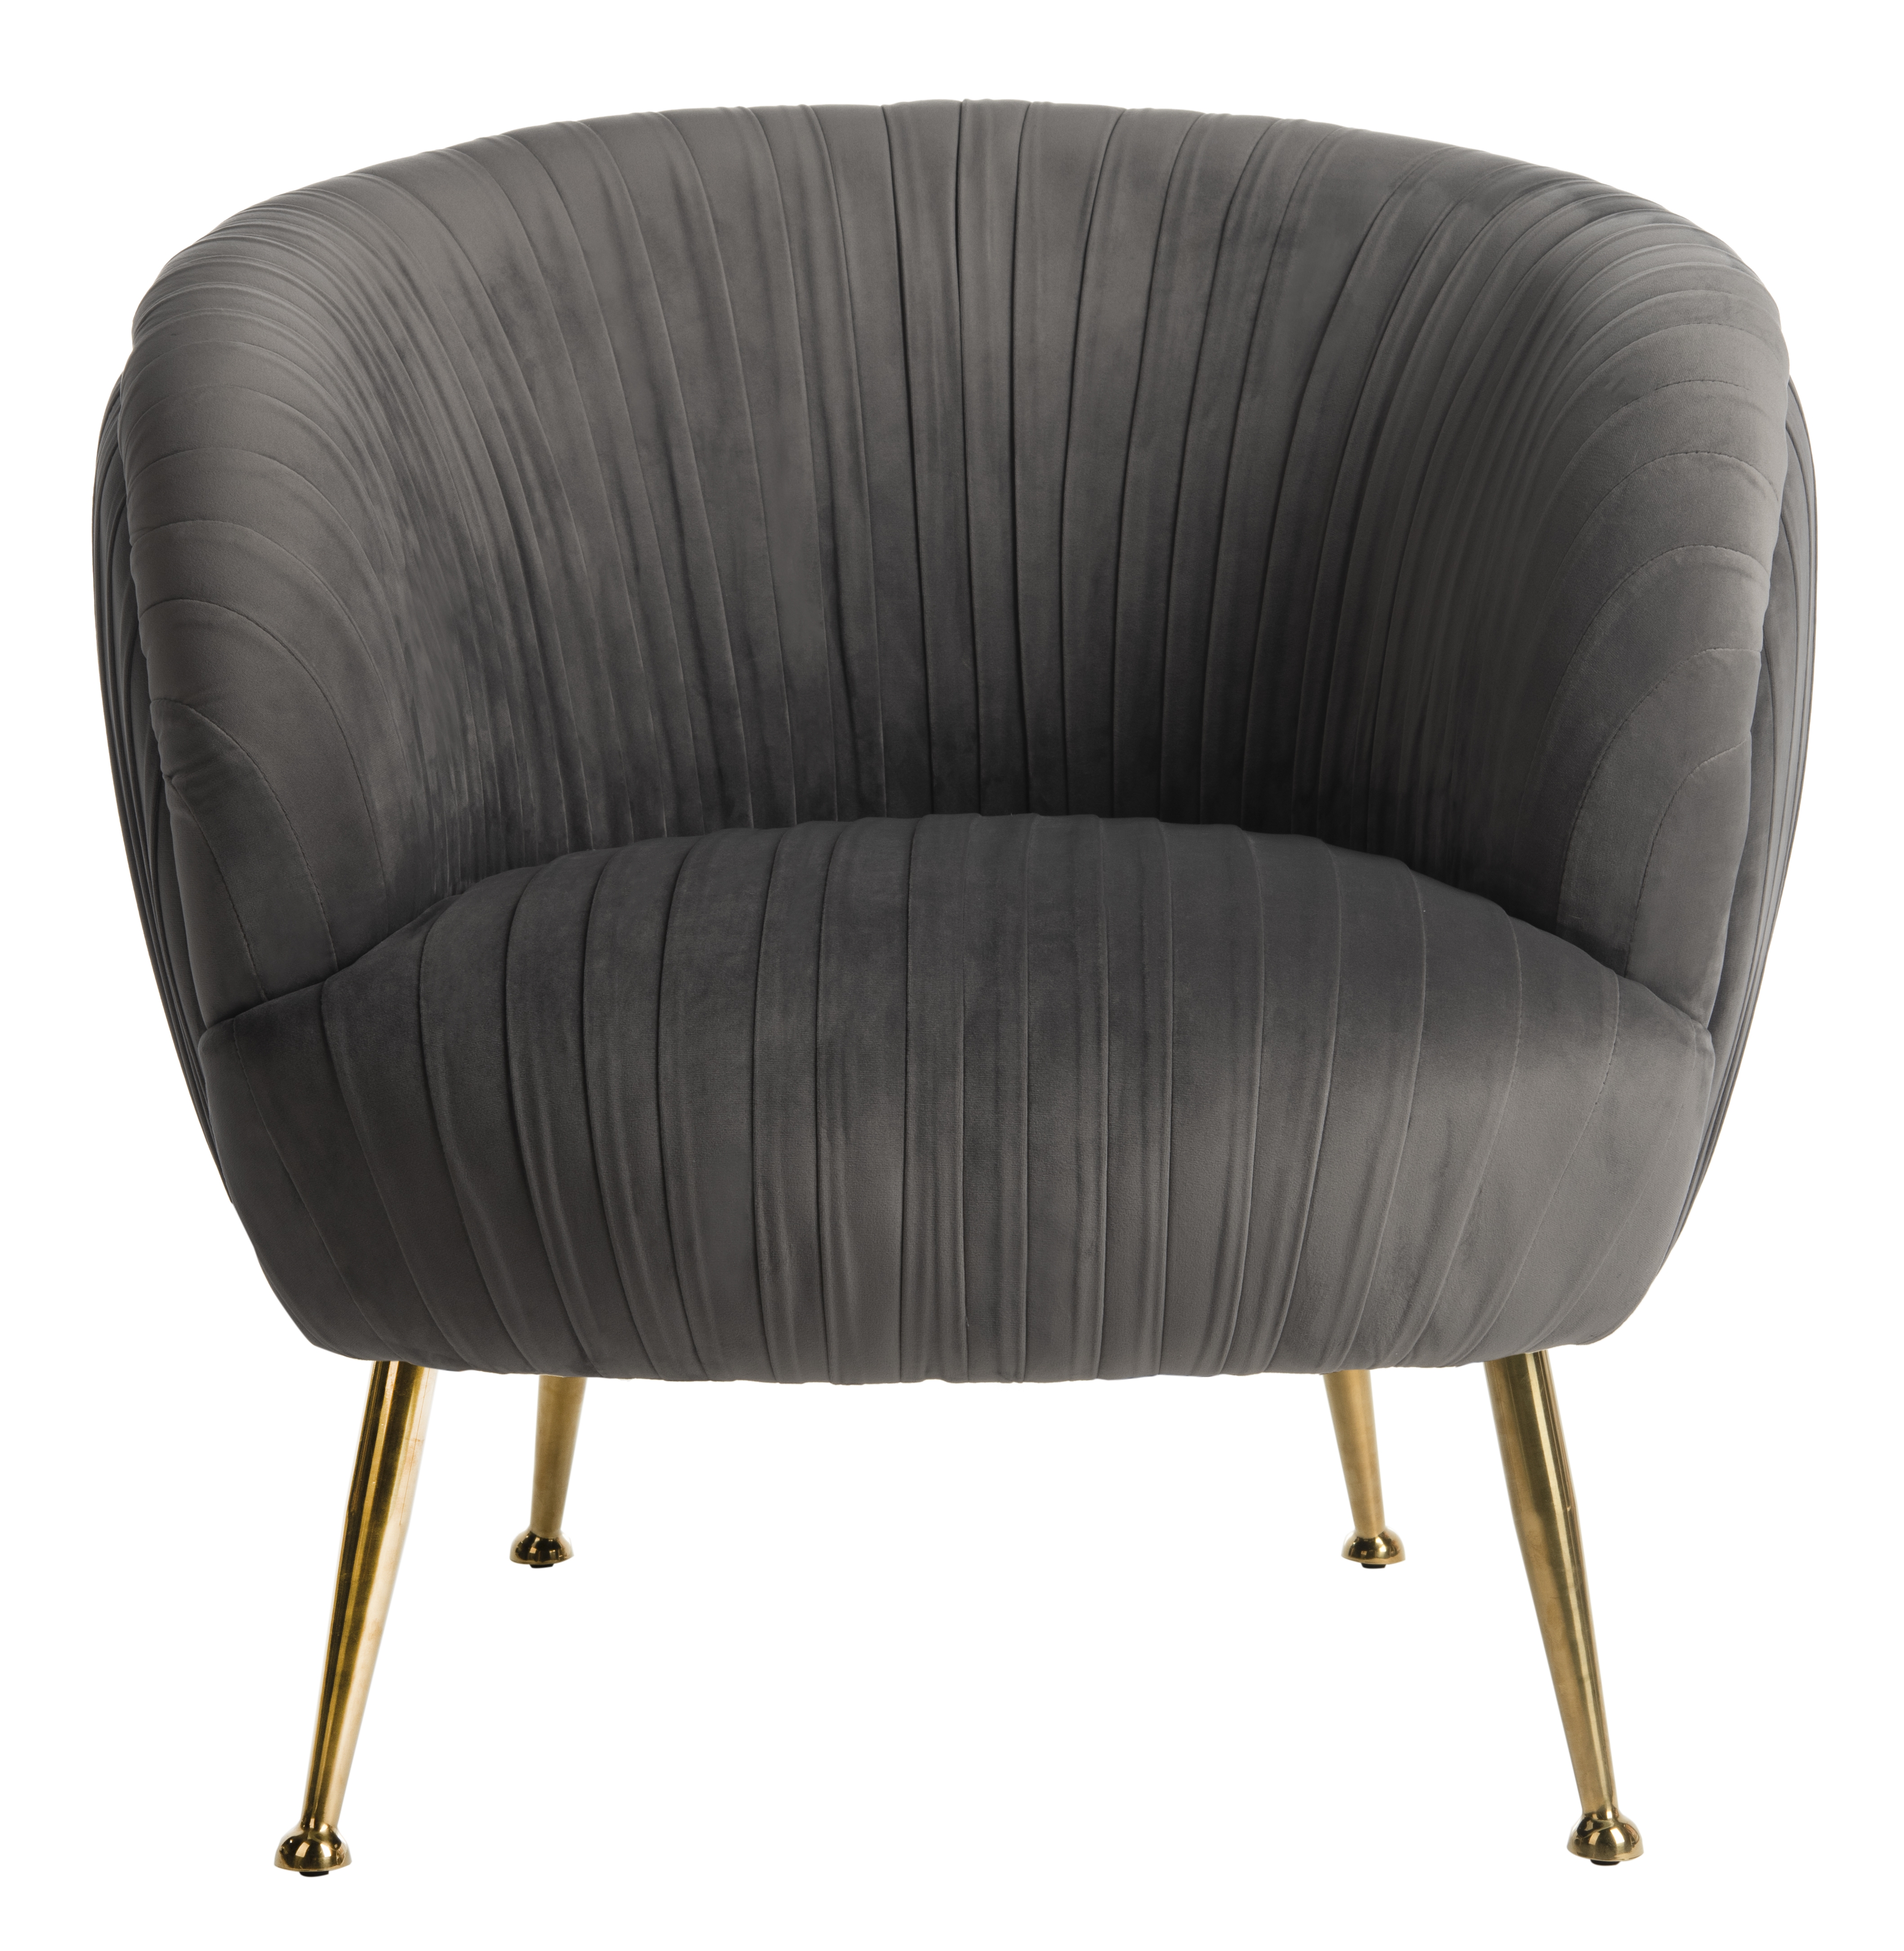 Ottillia Shell Accent Chair - Dark Grey - Arlo Home - Image 0